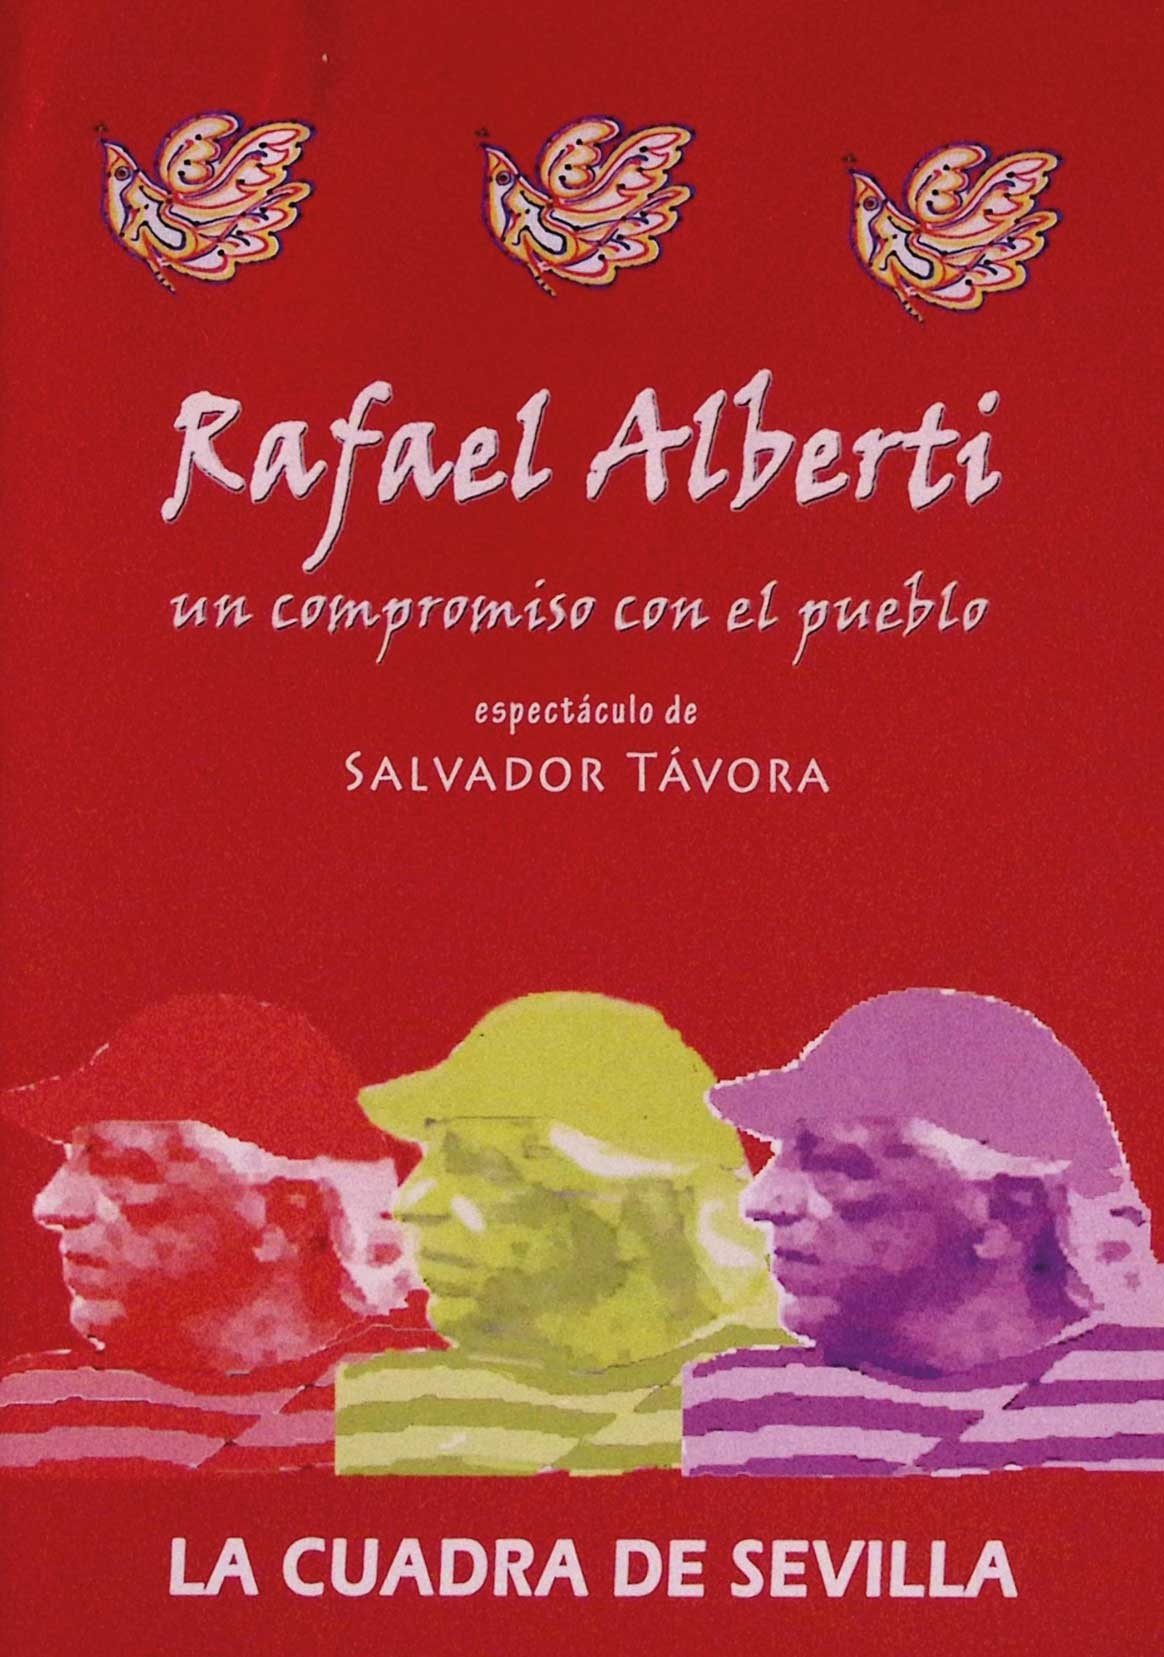 Rafael Alberti, un compromiso con el pueblo. Espectáculo de Salvador Távora. La Cuadra de Sevilla